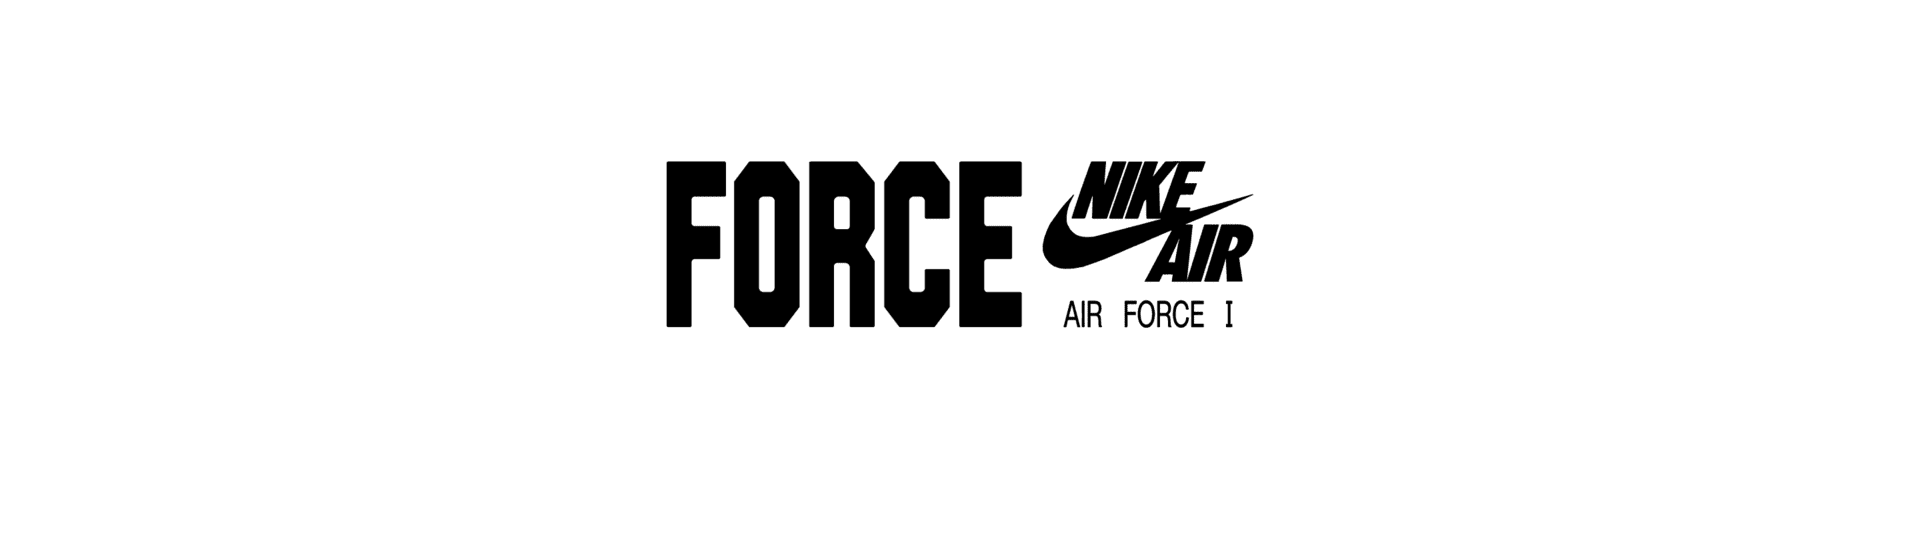 エア フォース 1. Nike 日本